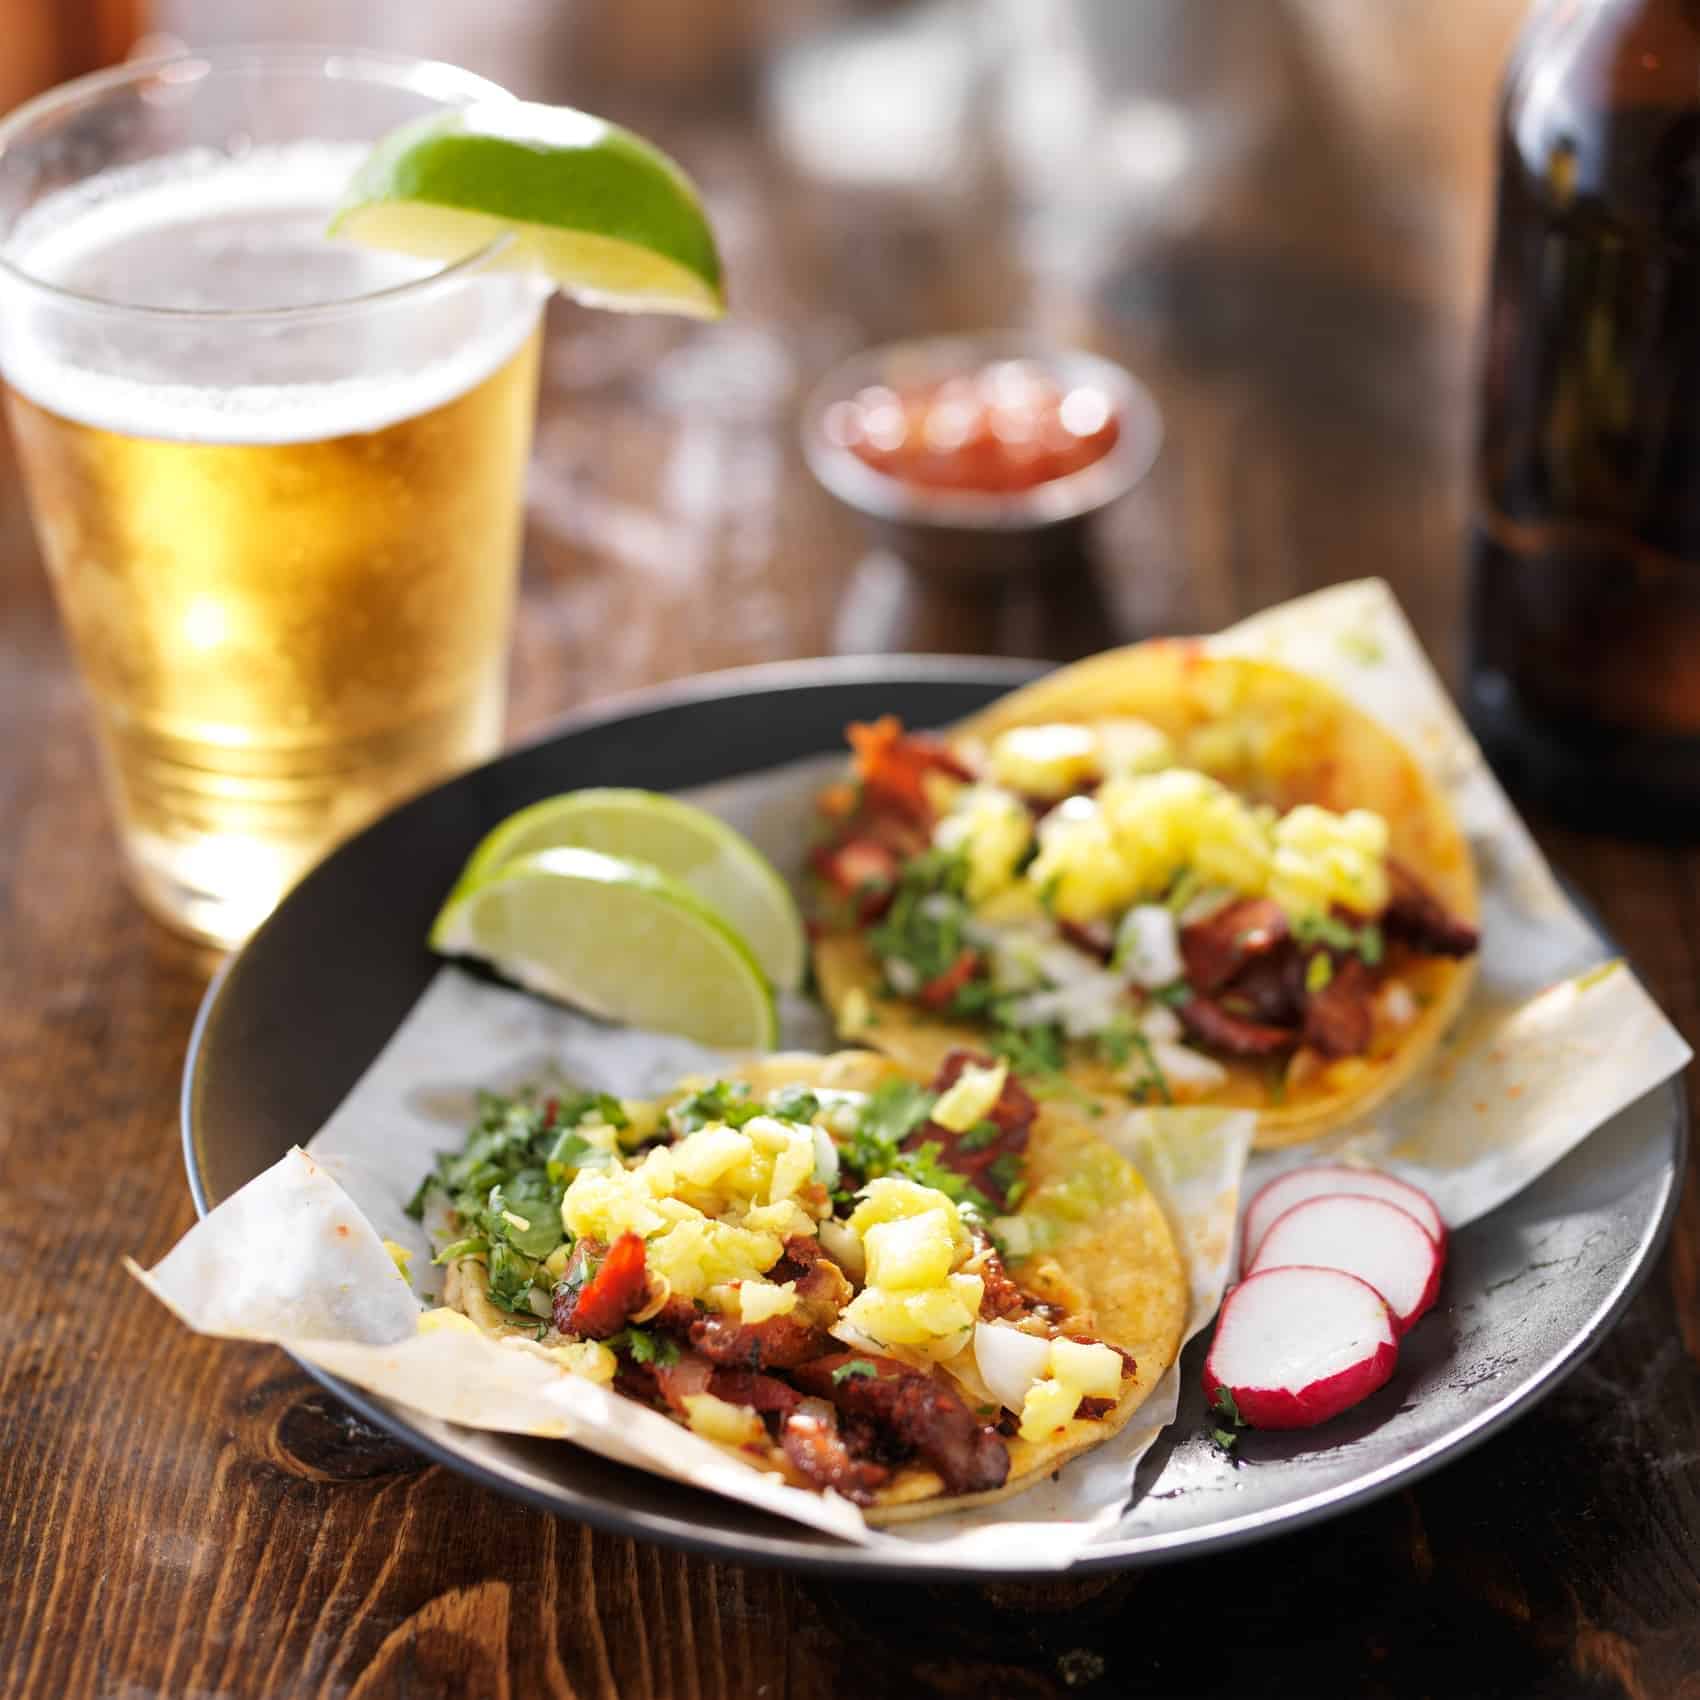 Tacos majs tortillas og en lille San Miguel øl til? Mexicansk mad når den er mest autentisk